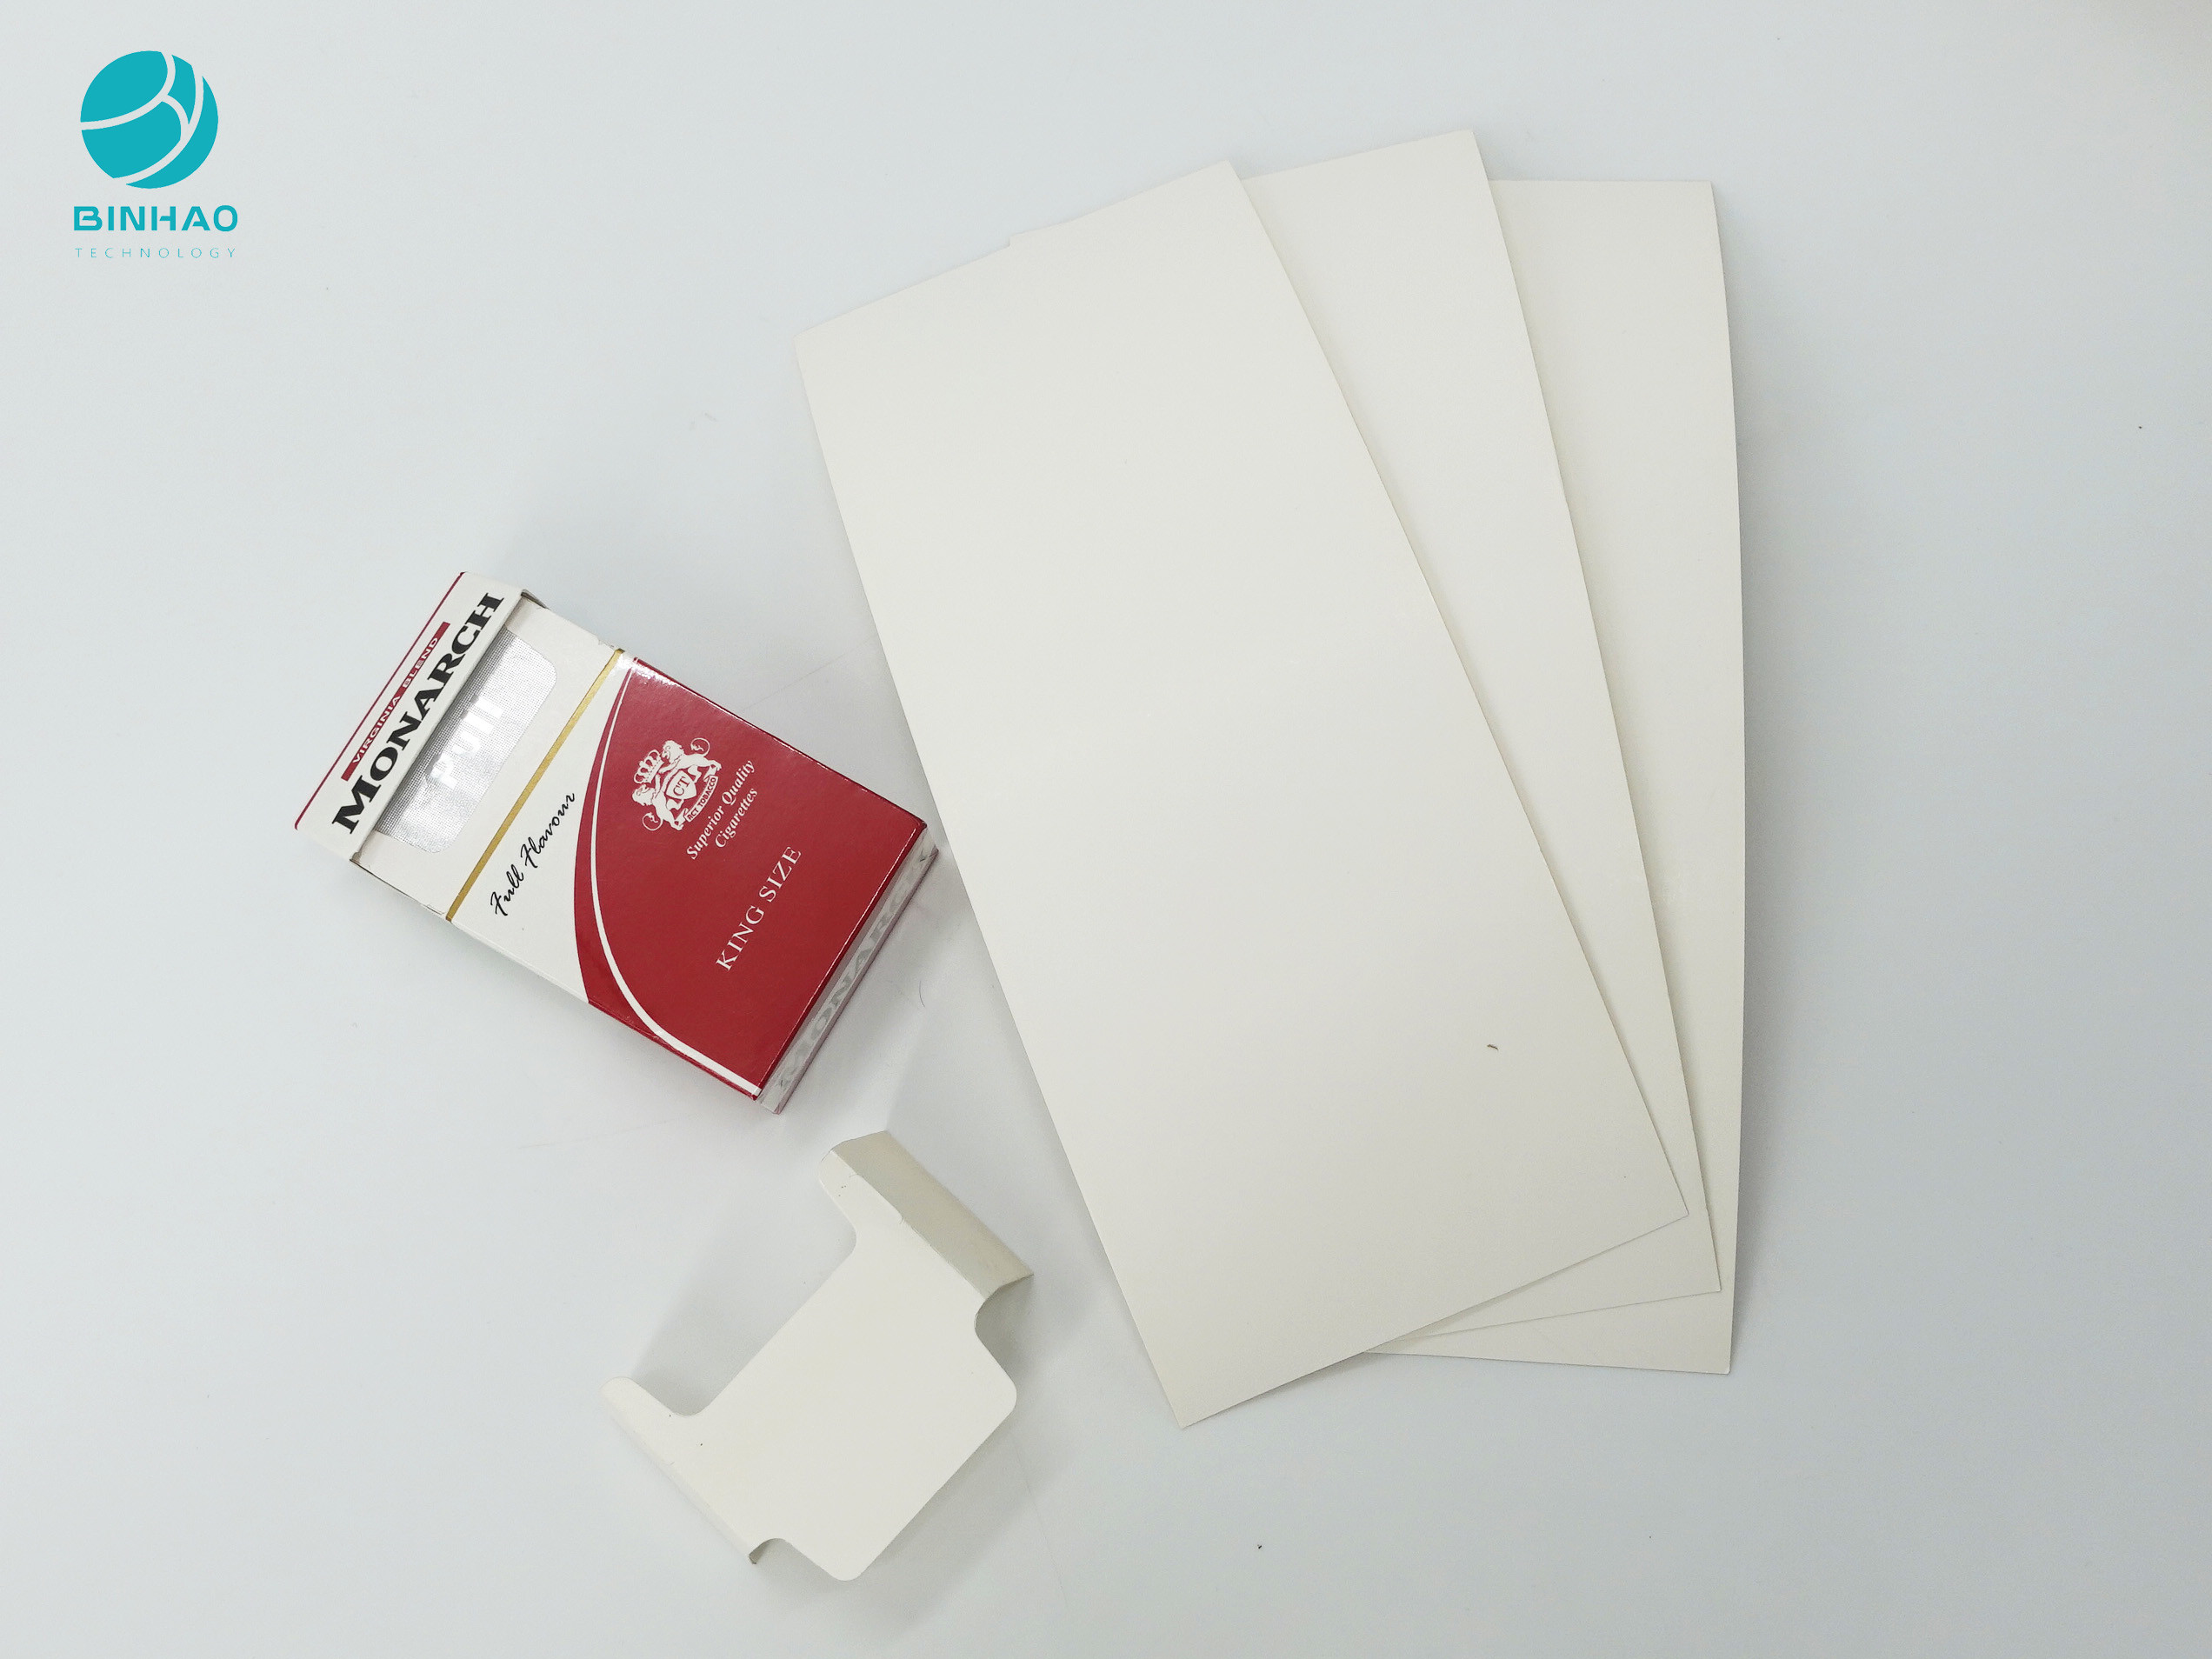 La couleur enduite a adapté le carton aux besoins du client intérieur de vue de taille pour le paquet de cigarette